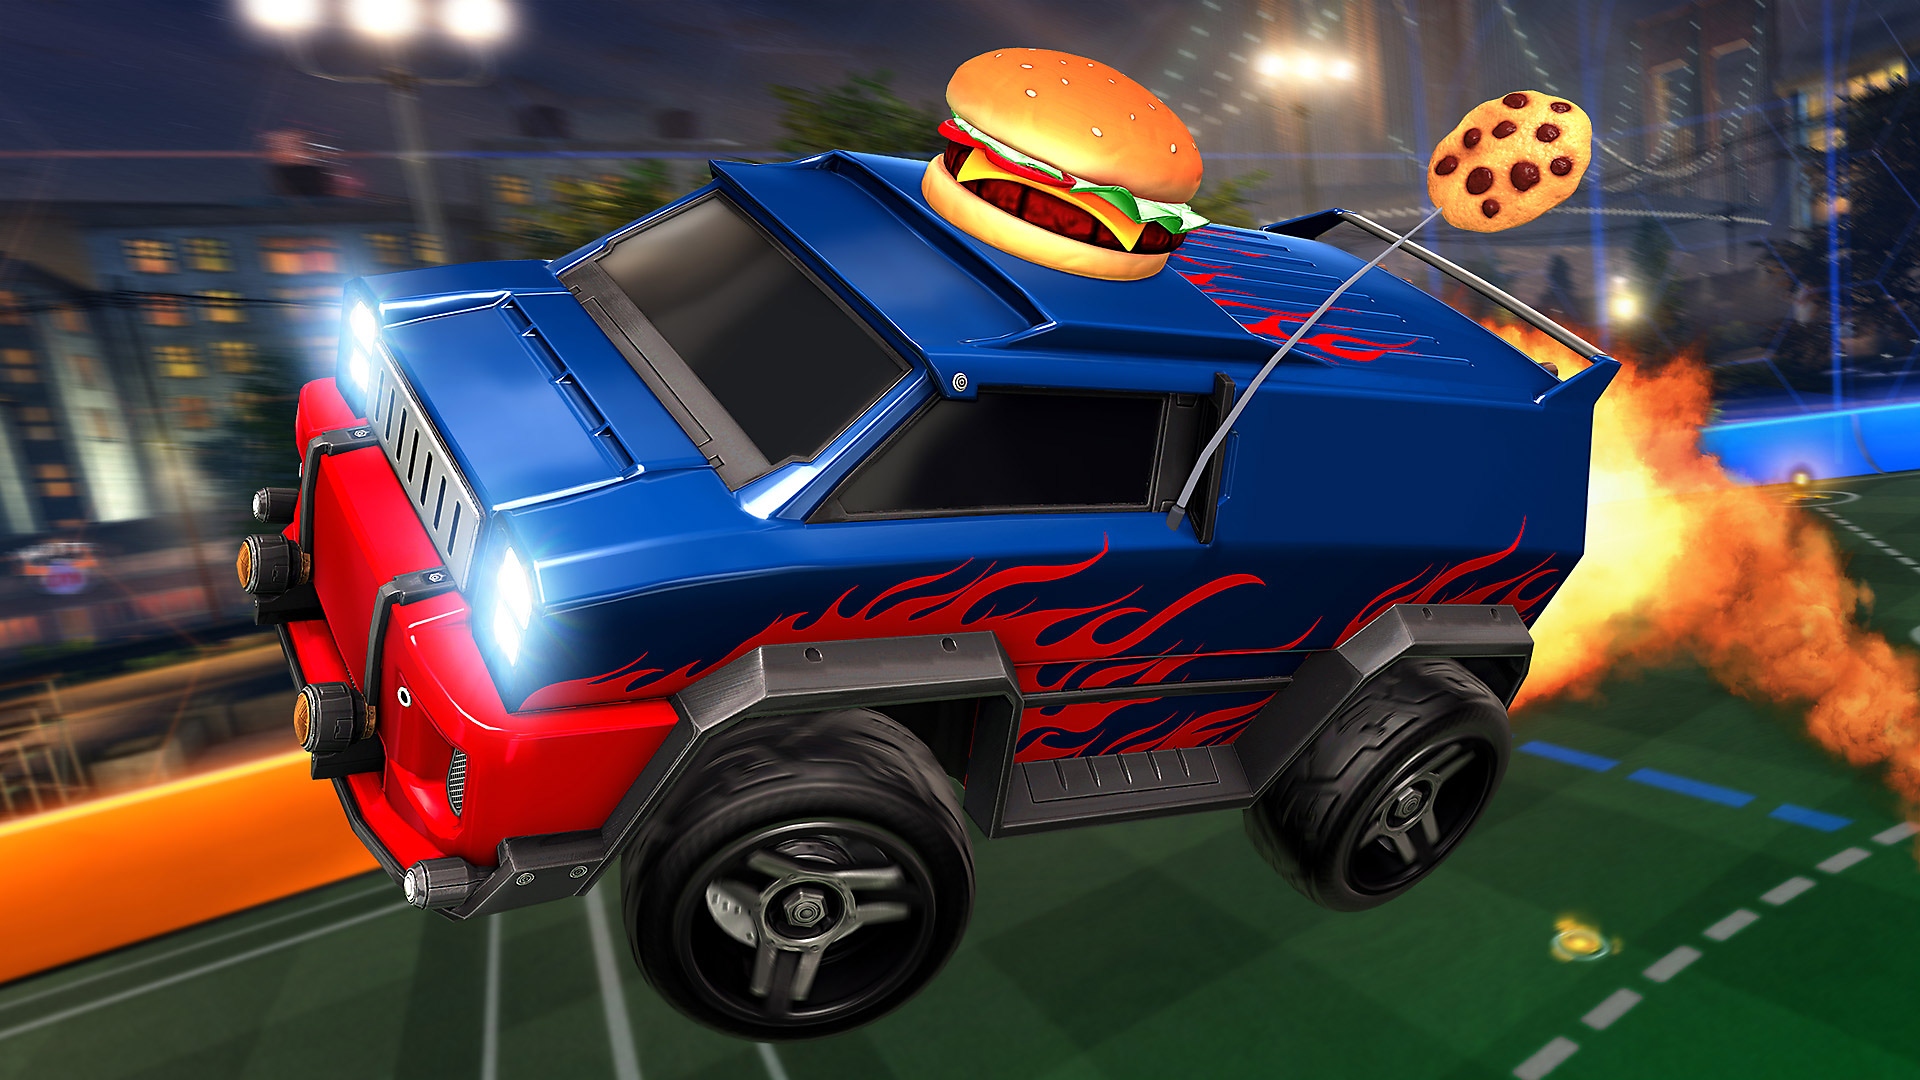 Capture d'écran de Rocket League montrant une camionnette bleue et rouge avec un hamburger sur le toit